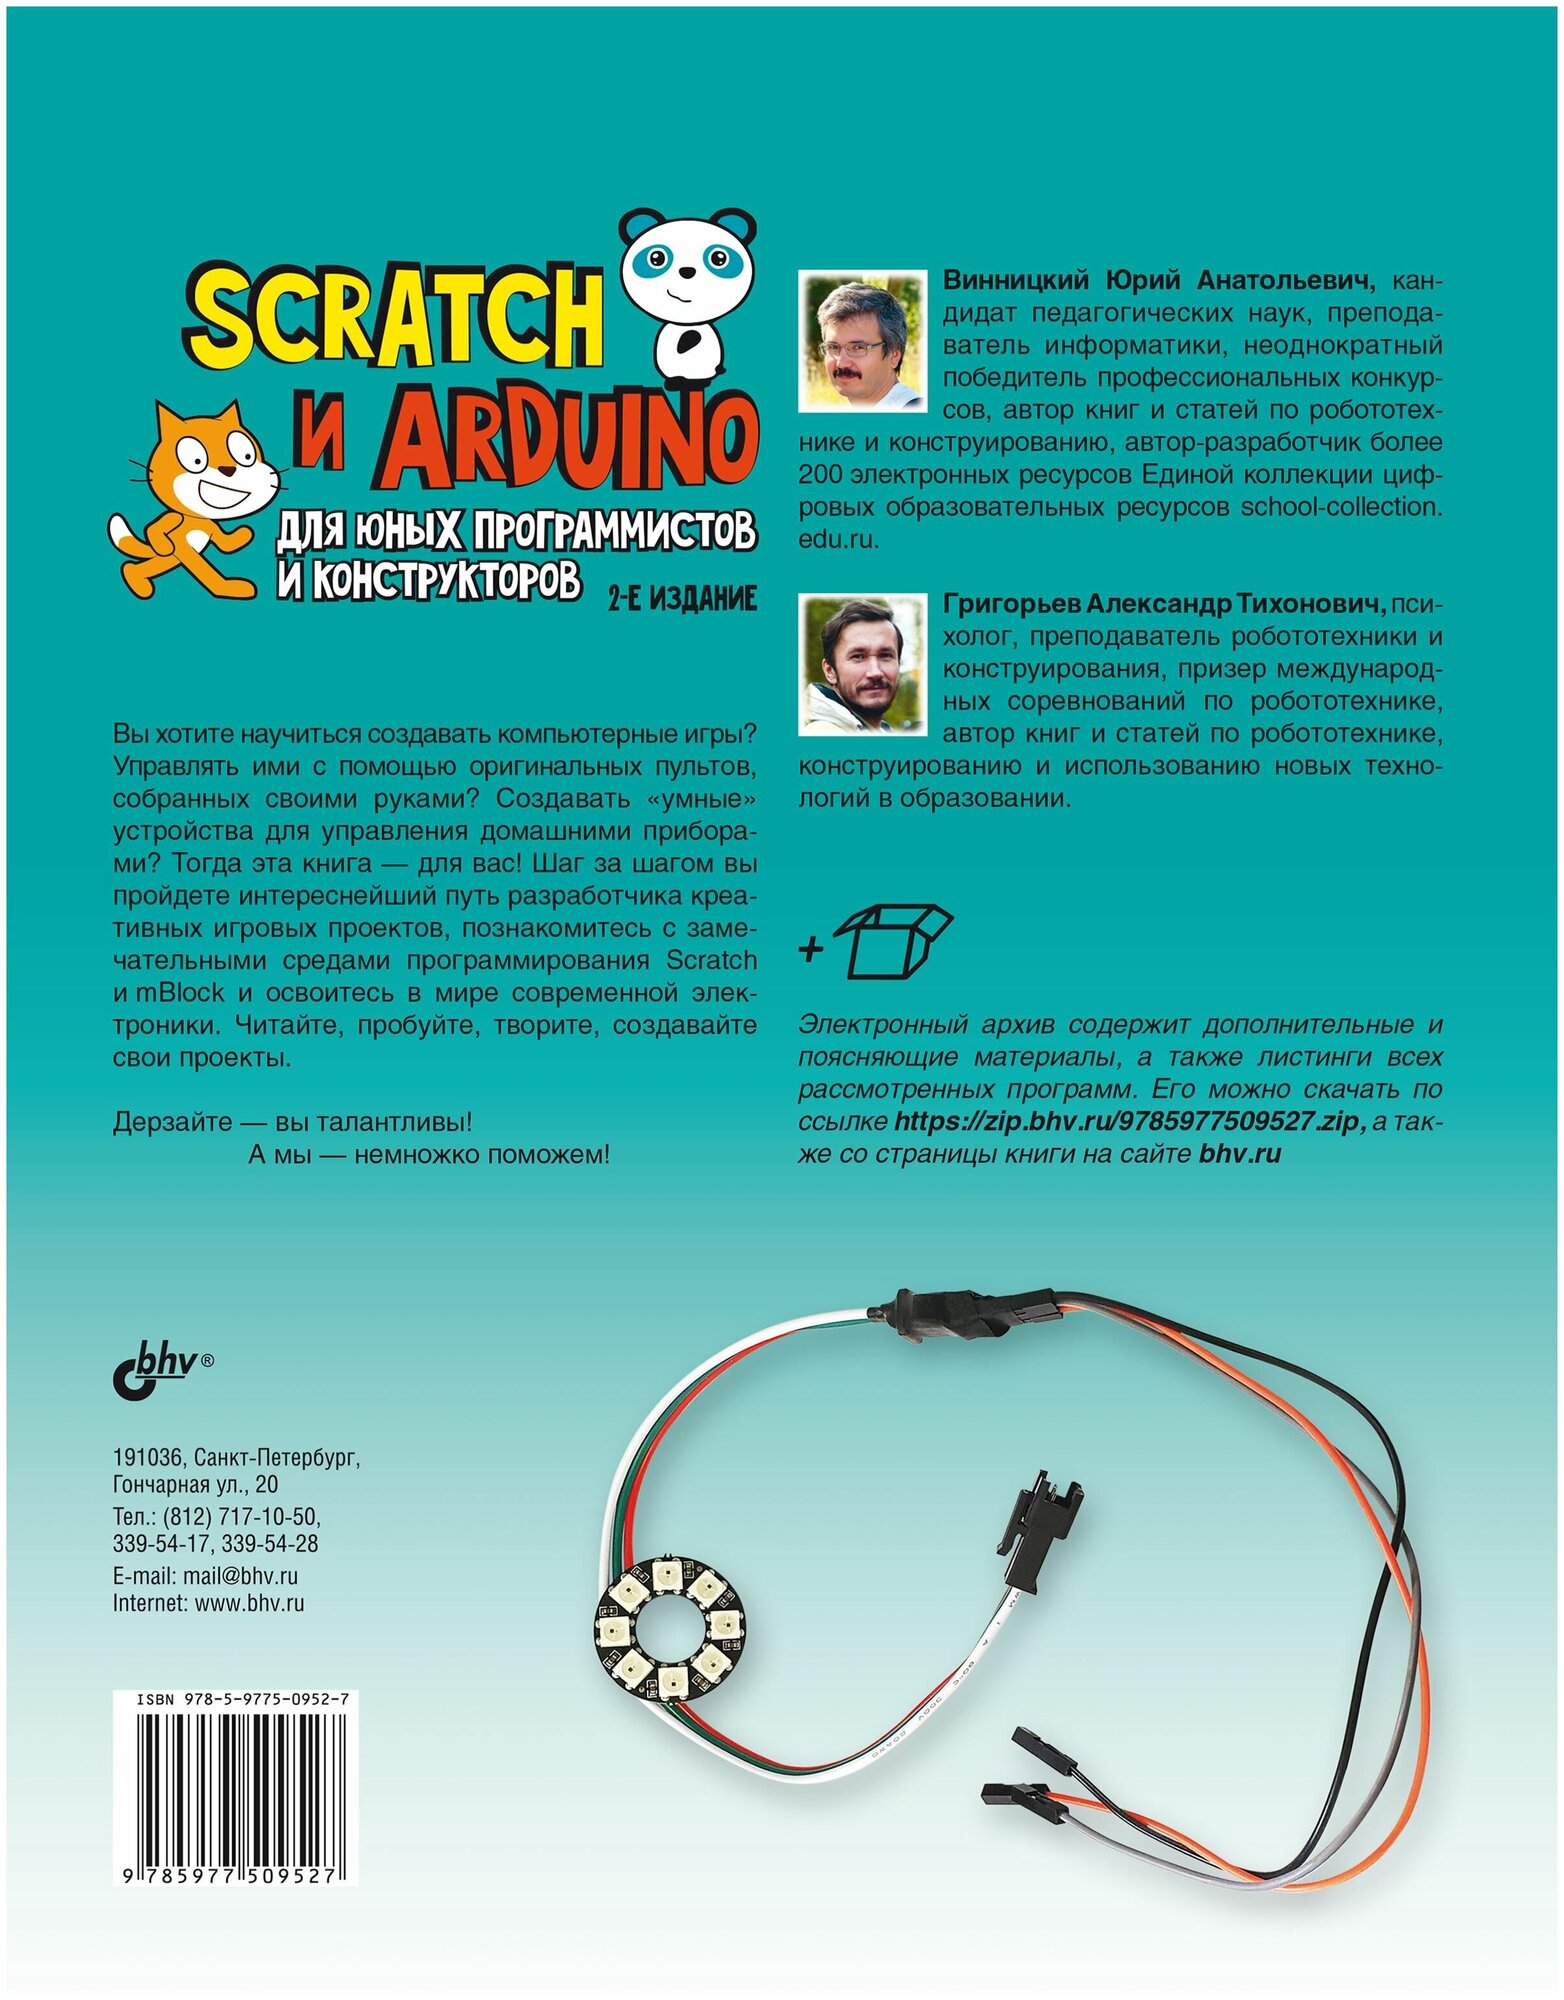 Scratch и Arduino для юных программистов и конструкторов - фото №2